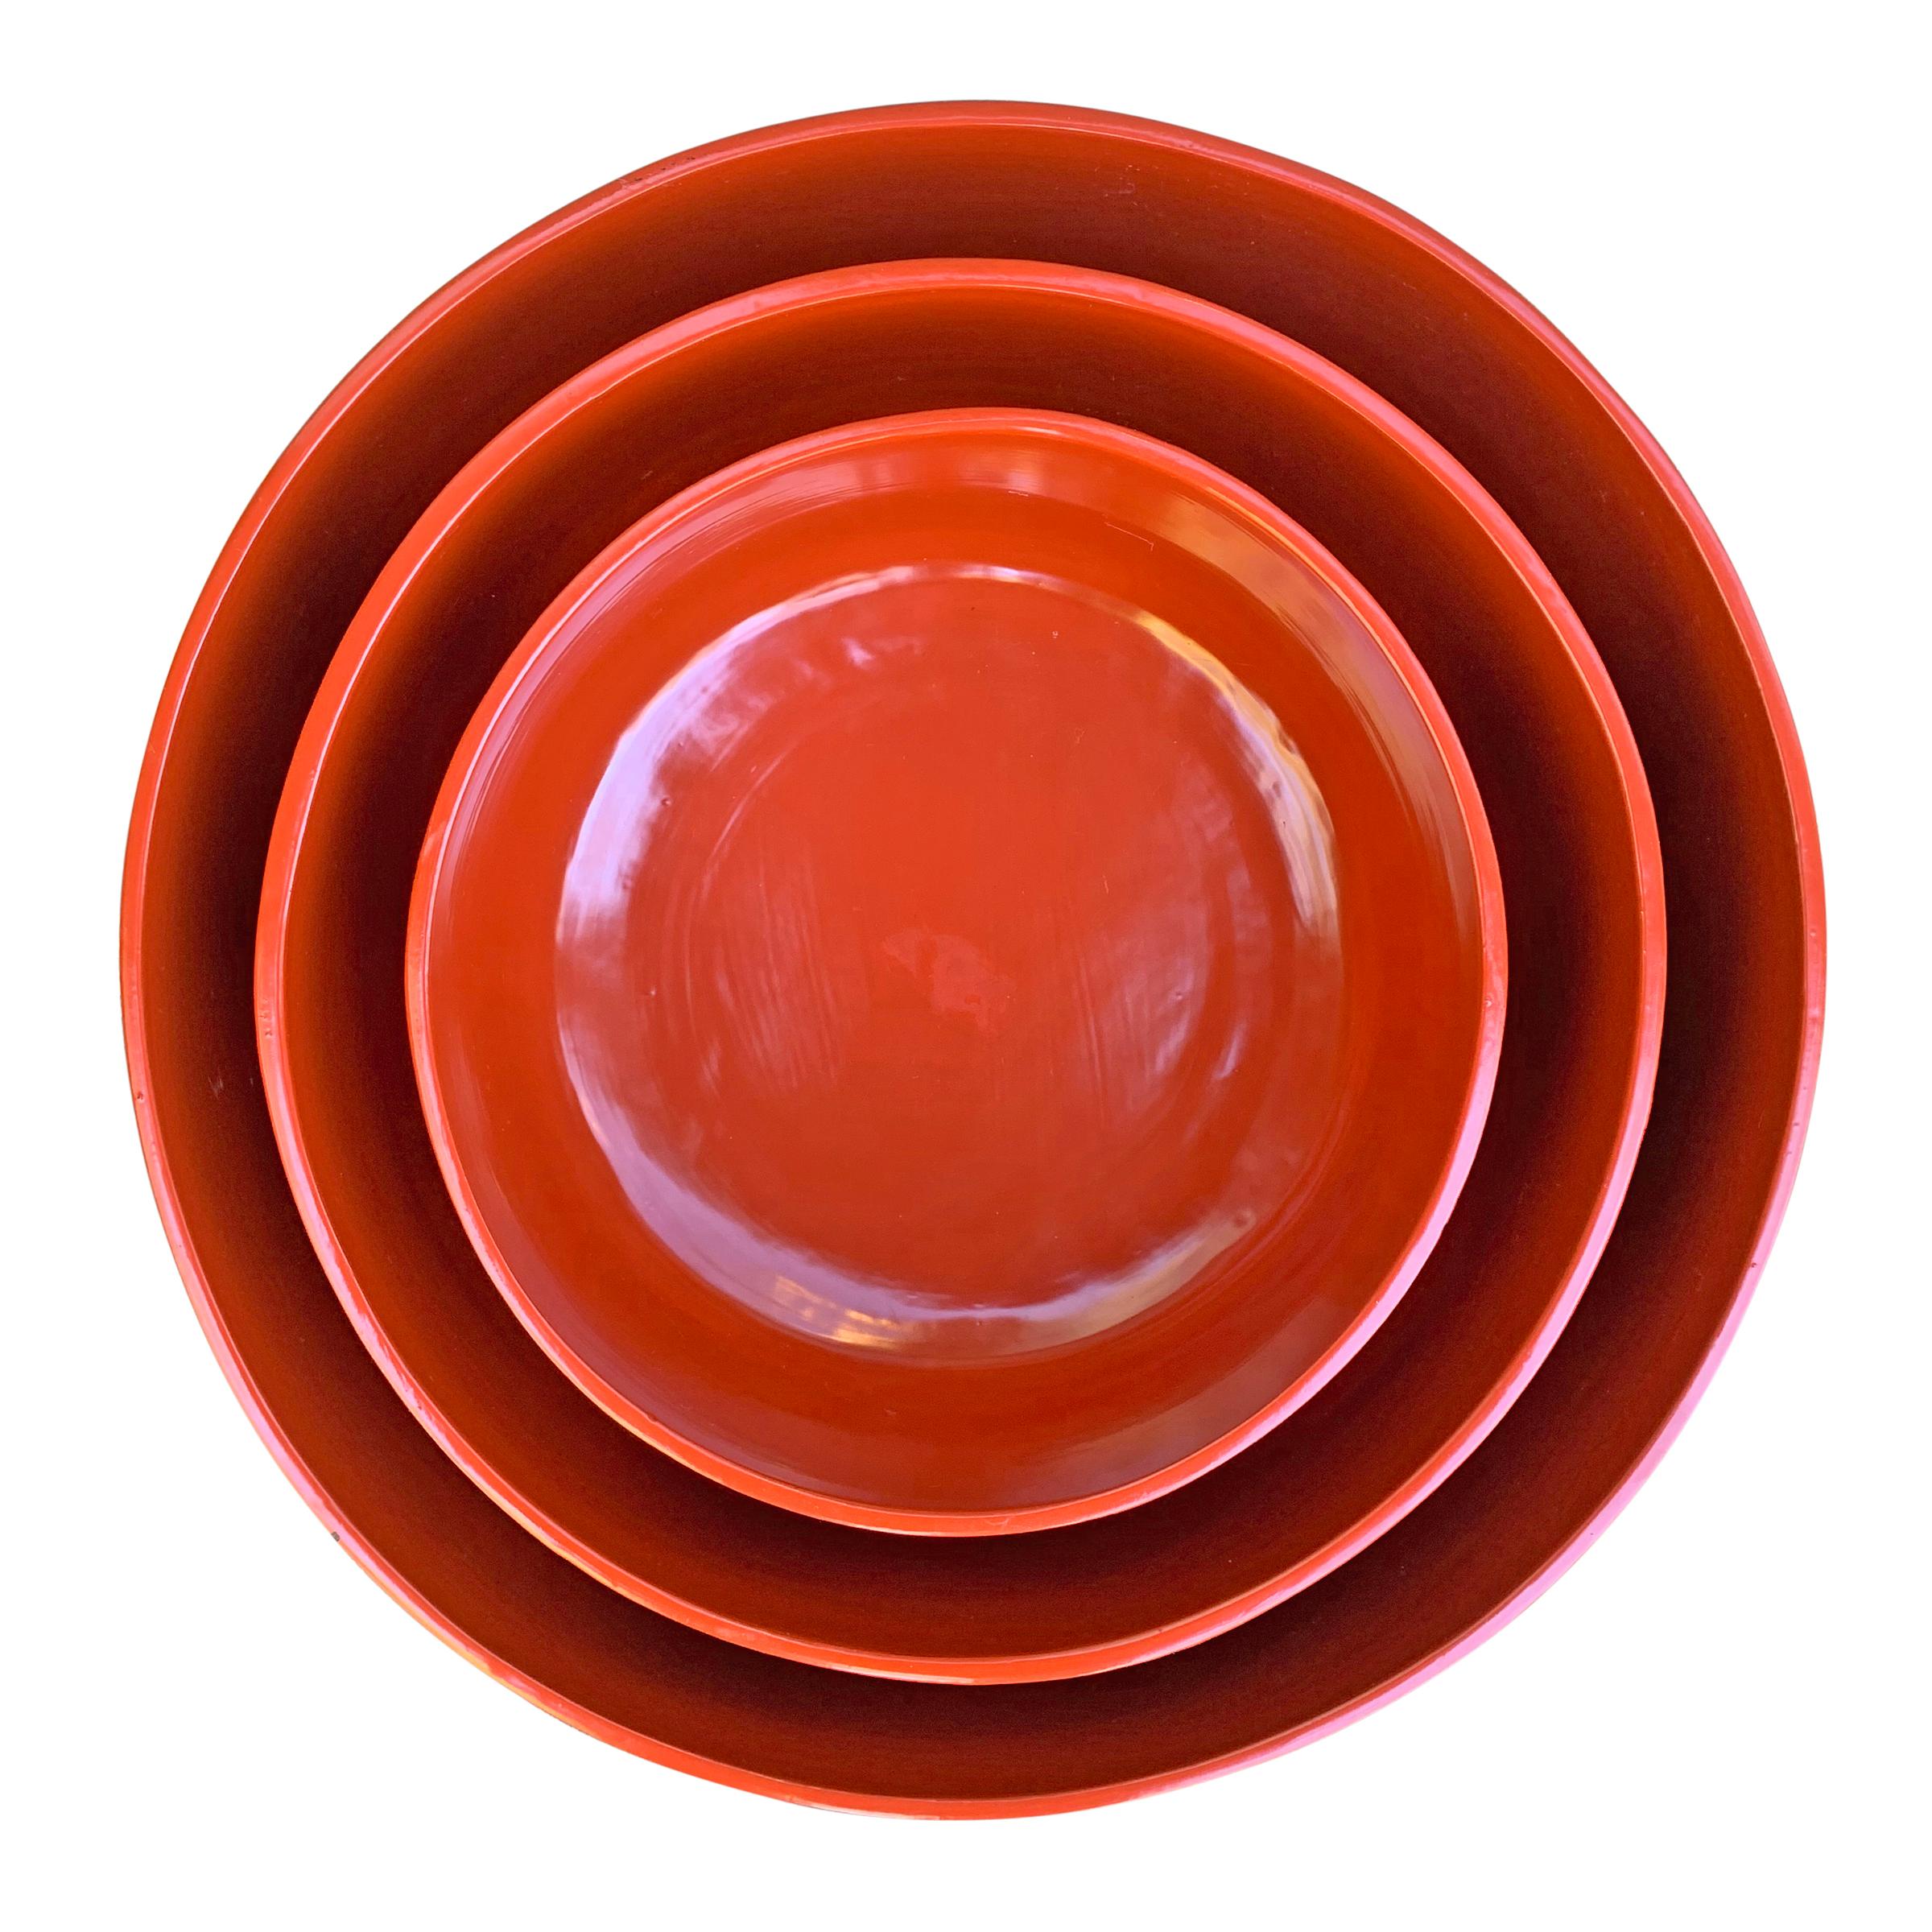 Un fantastique et audacieux ensemble de trois bols chinois en laque noire et rouge du milieu du 20e siècle aux formes modernes et sophistiquées avec des côtés droits, des coins légèrement inclinés et des fonds plats. Peut être emboîté ou utilisé